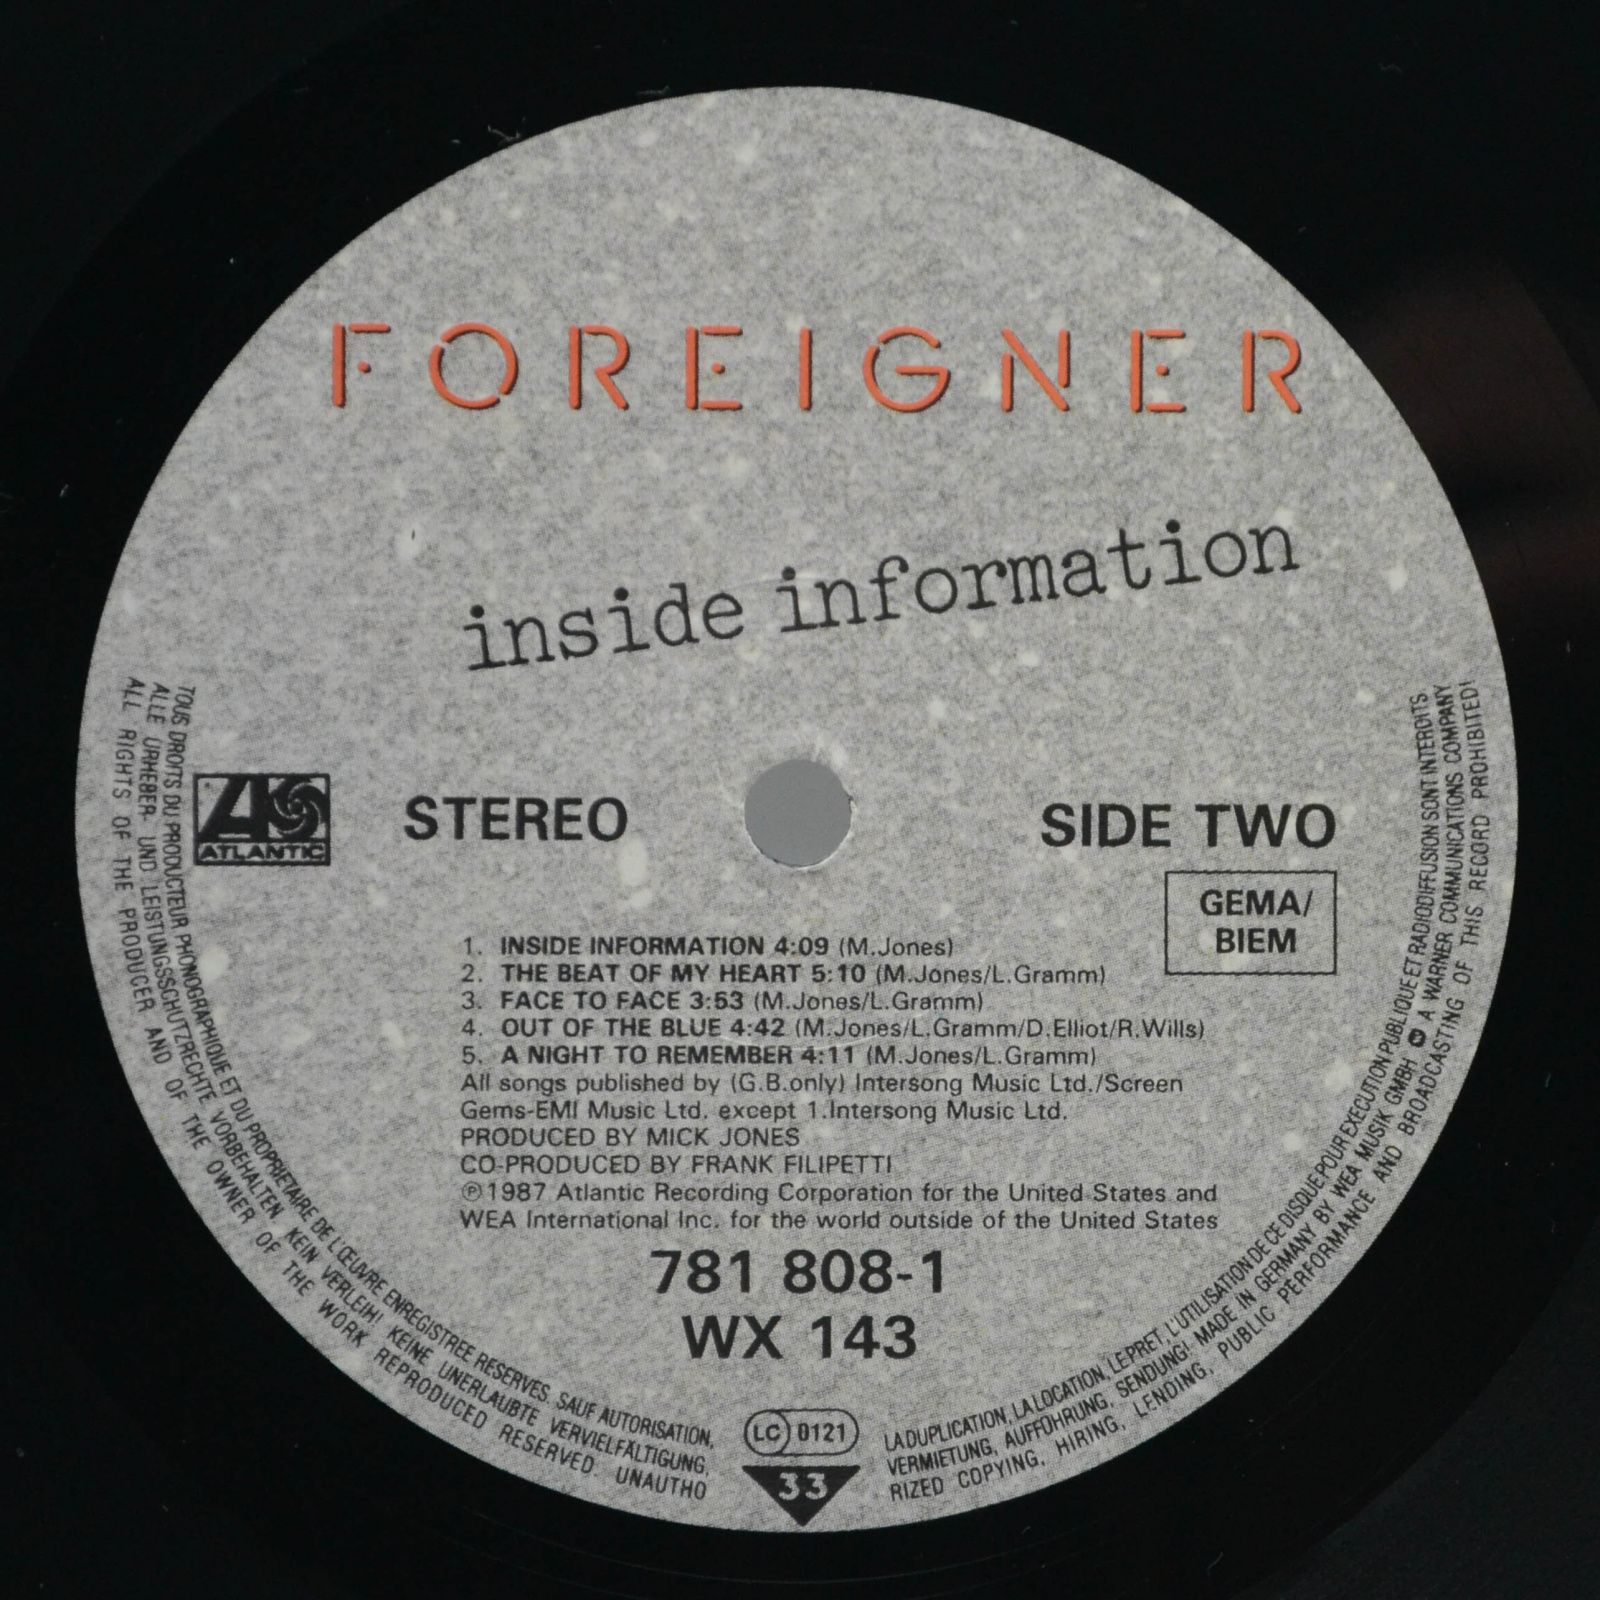 Foreigner — Inside Information, 1987